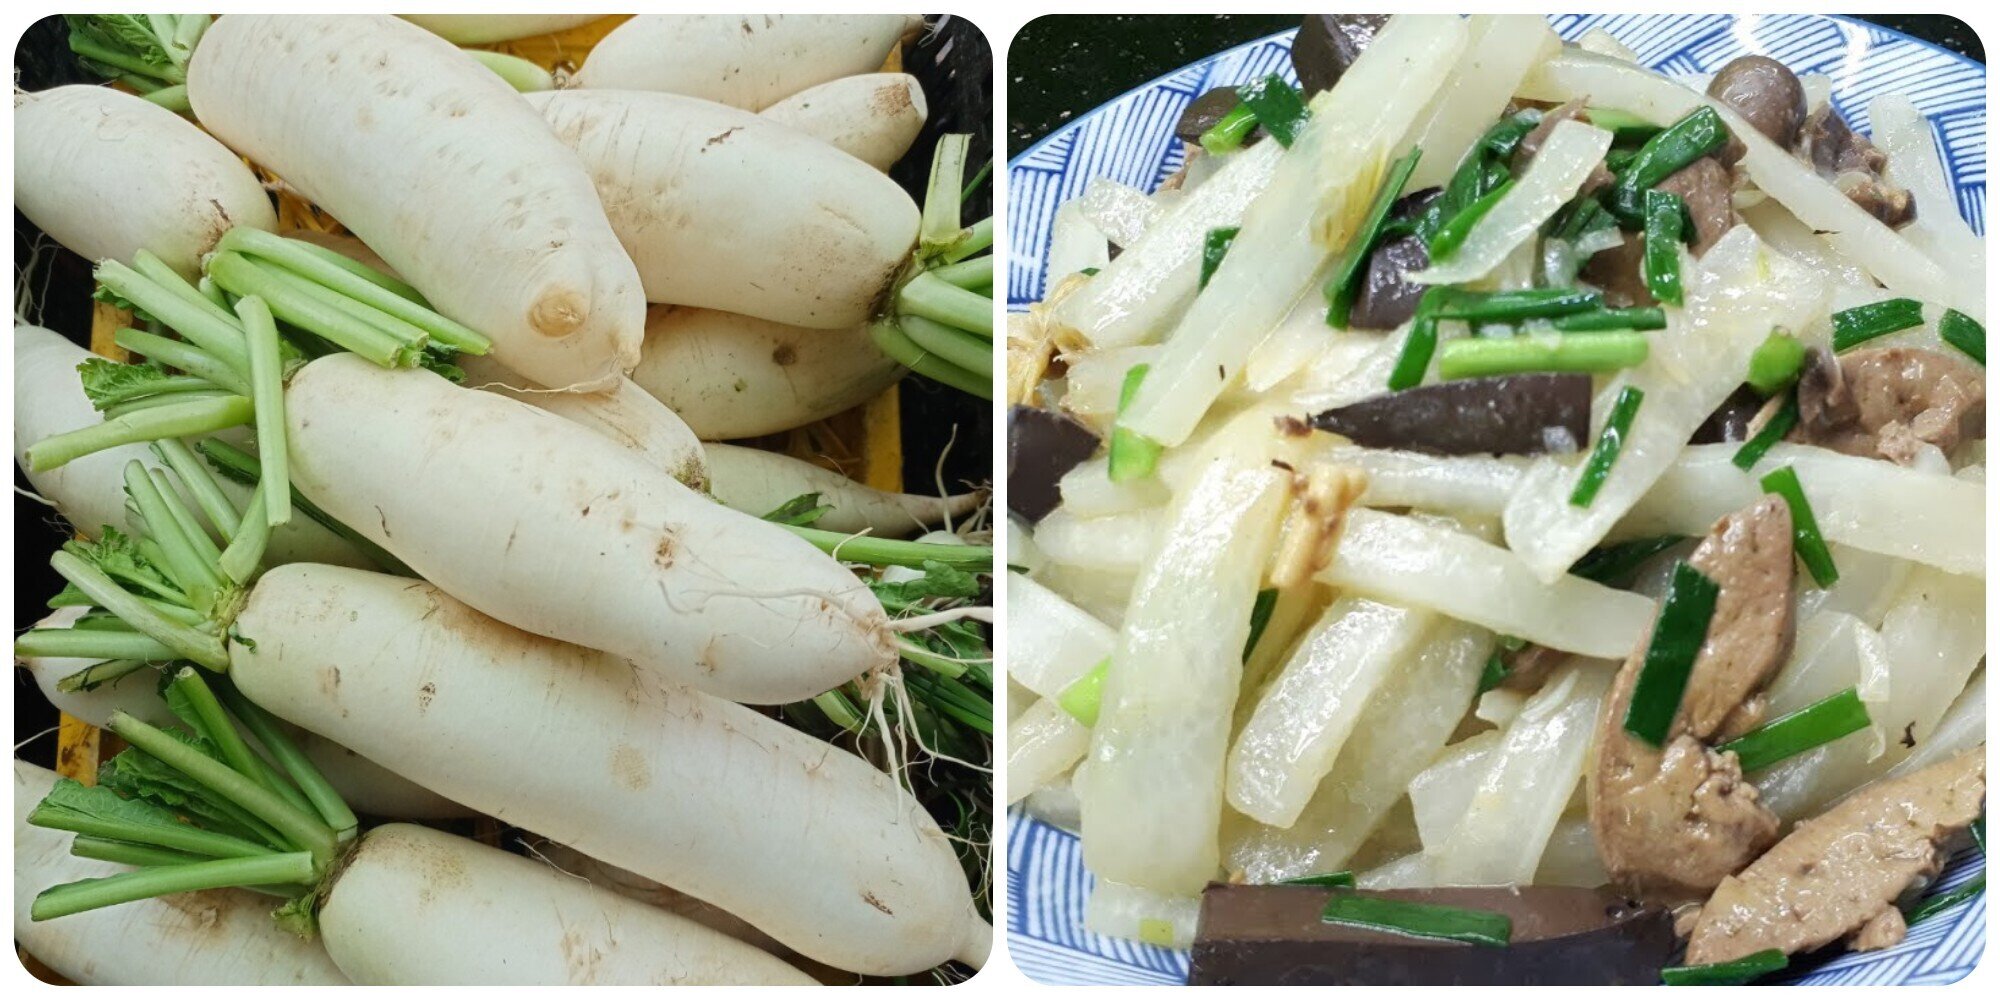 Củ cải trắng rất tốt cho sức khoẻ.